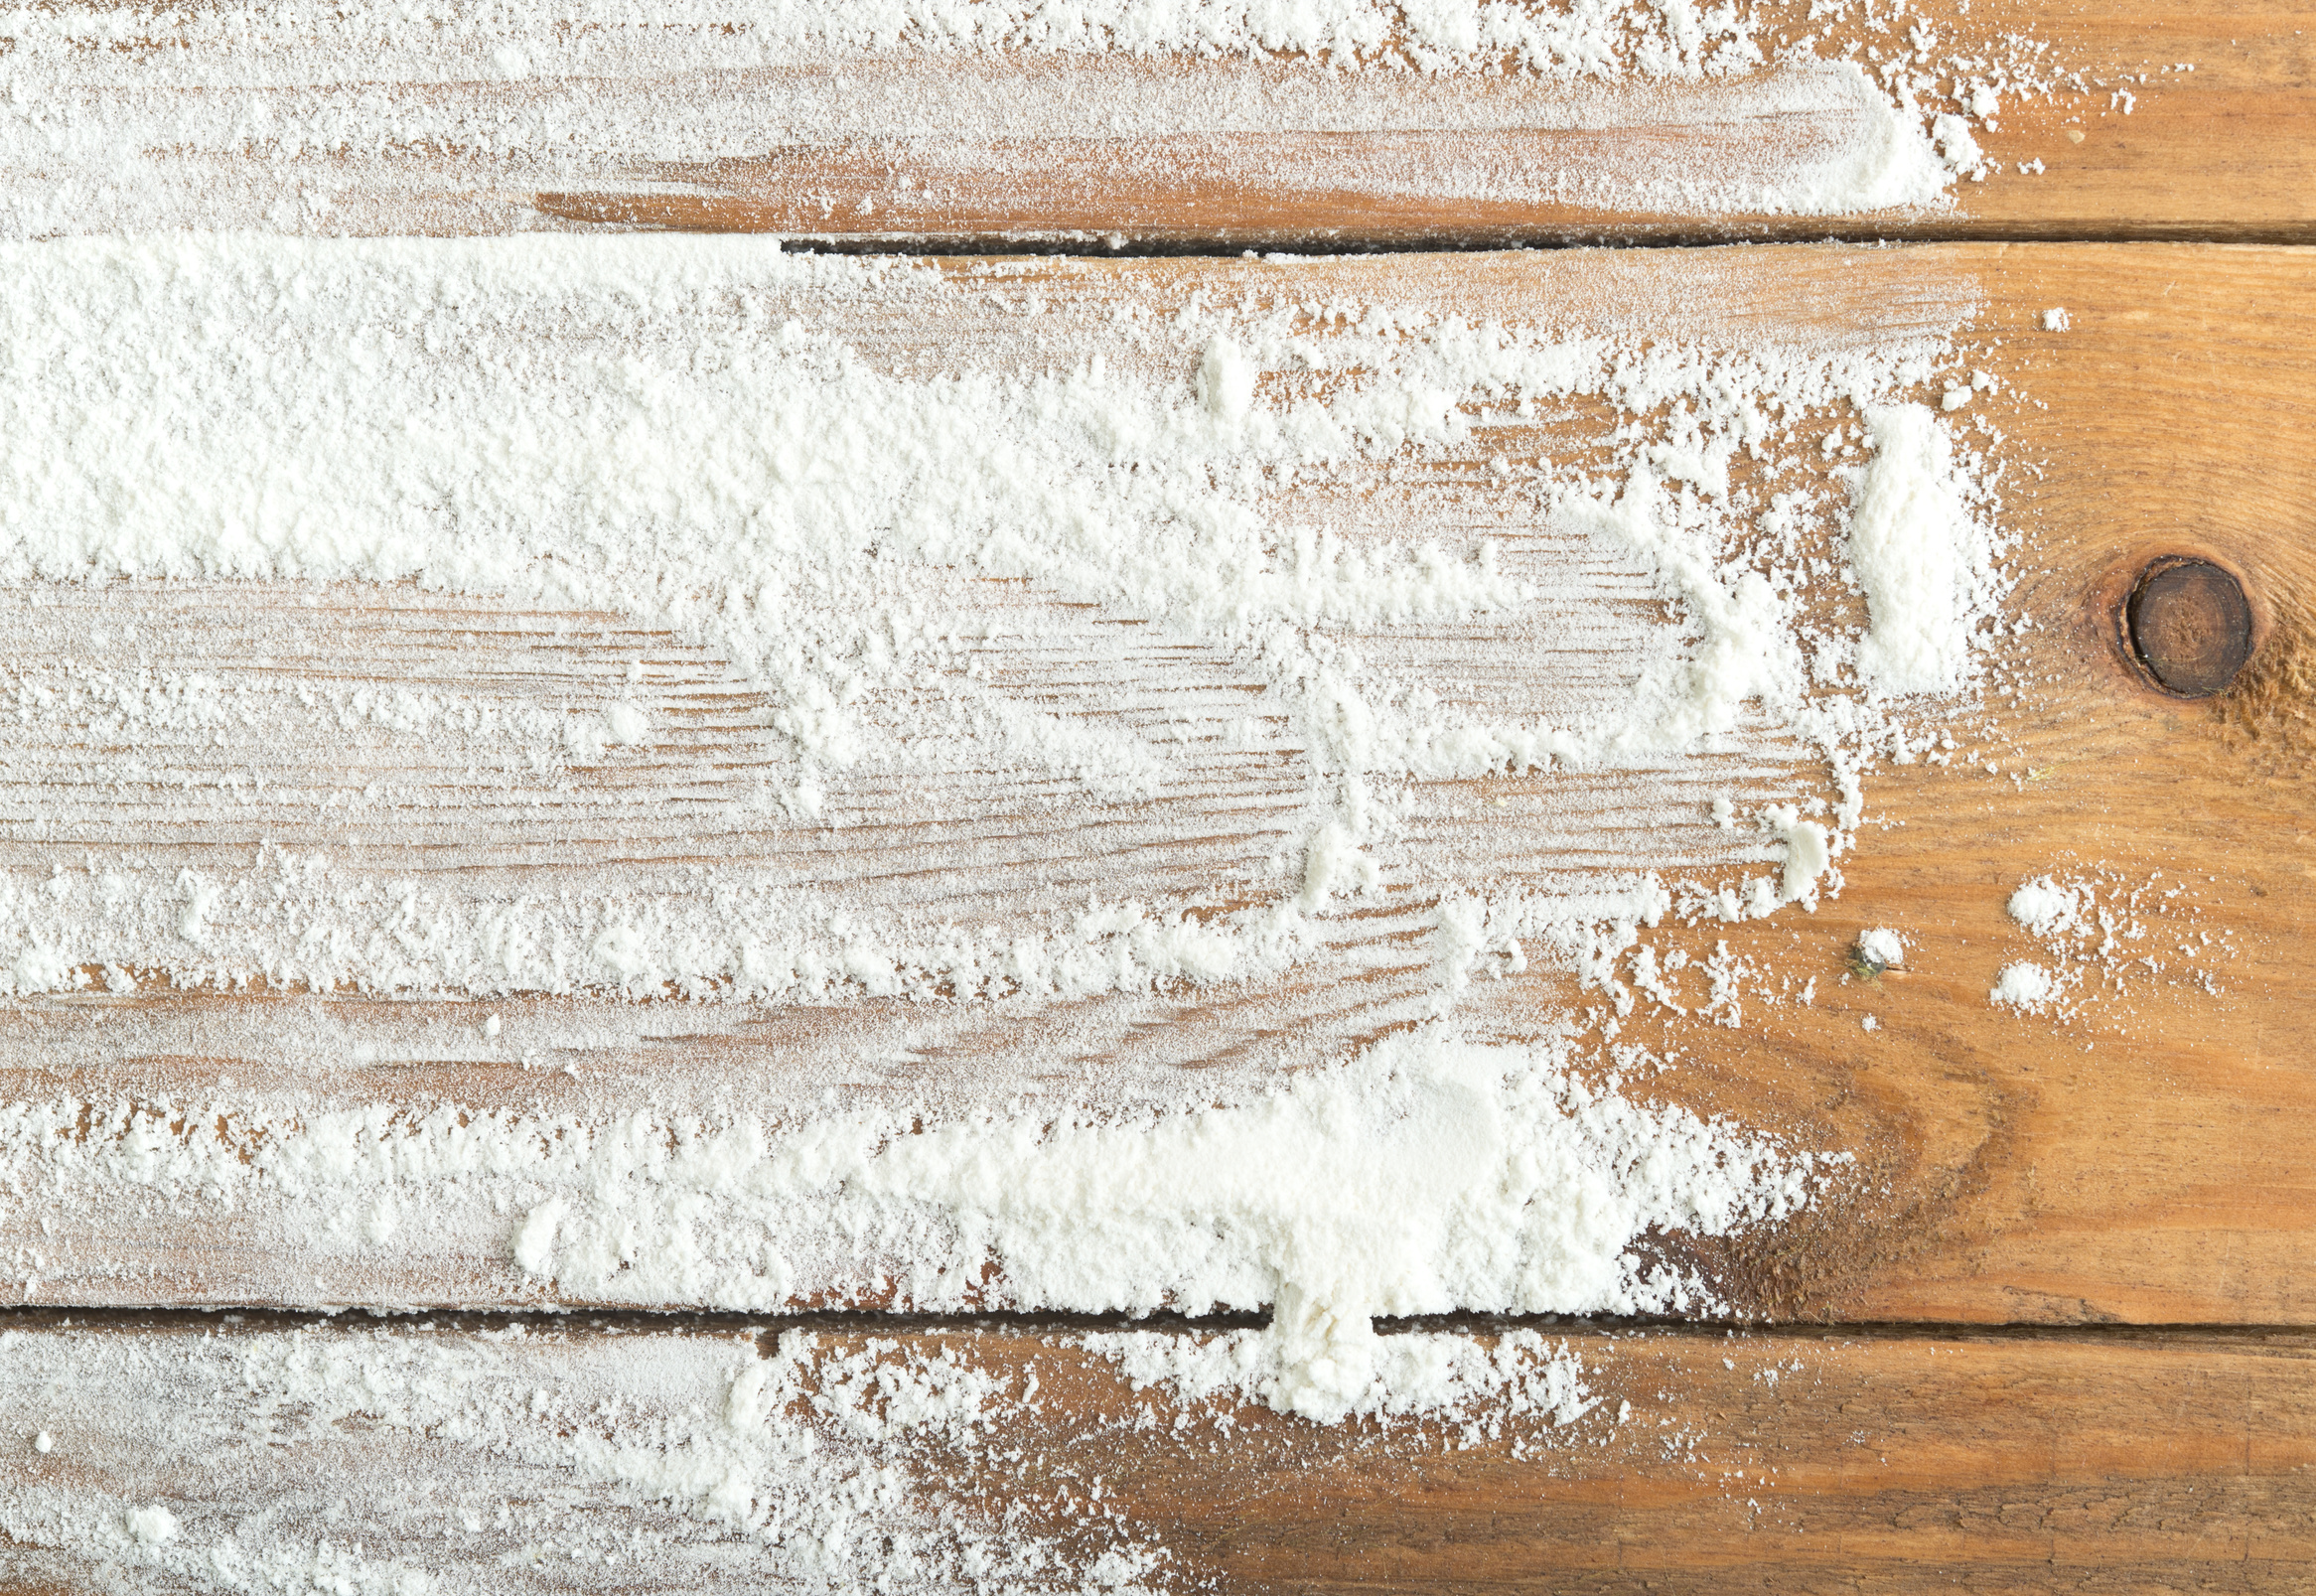 flour on table